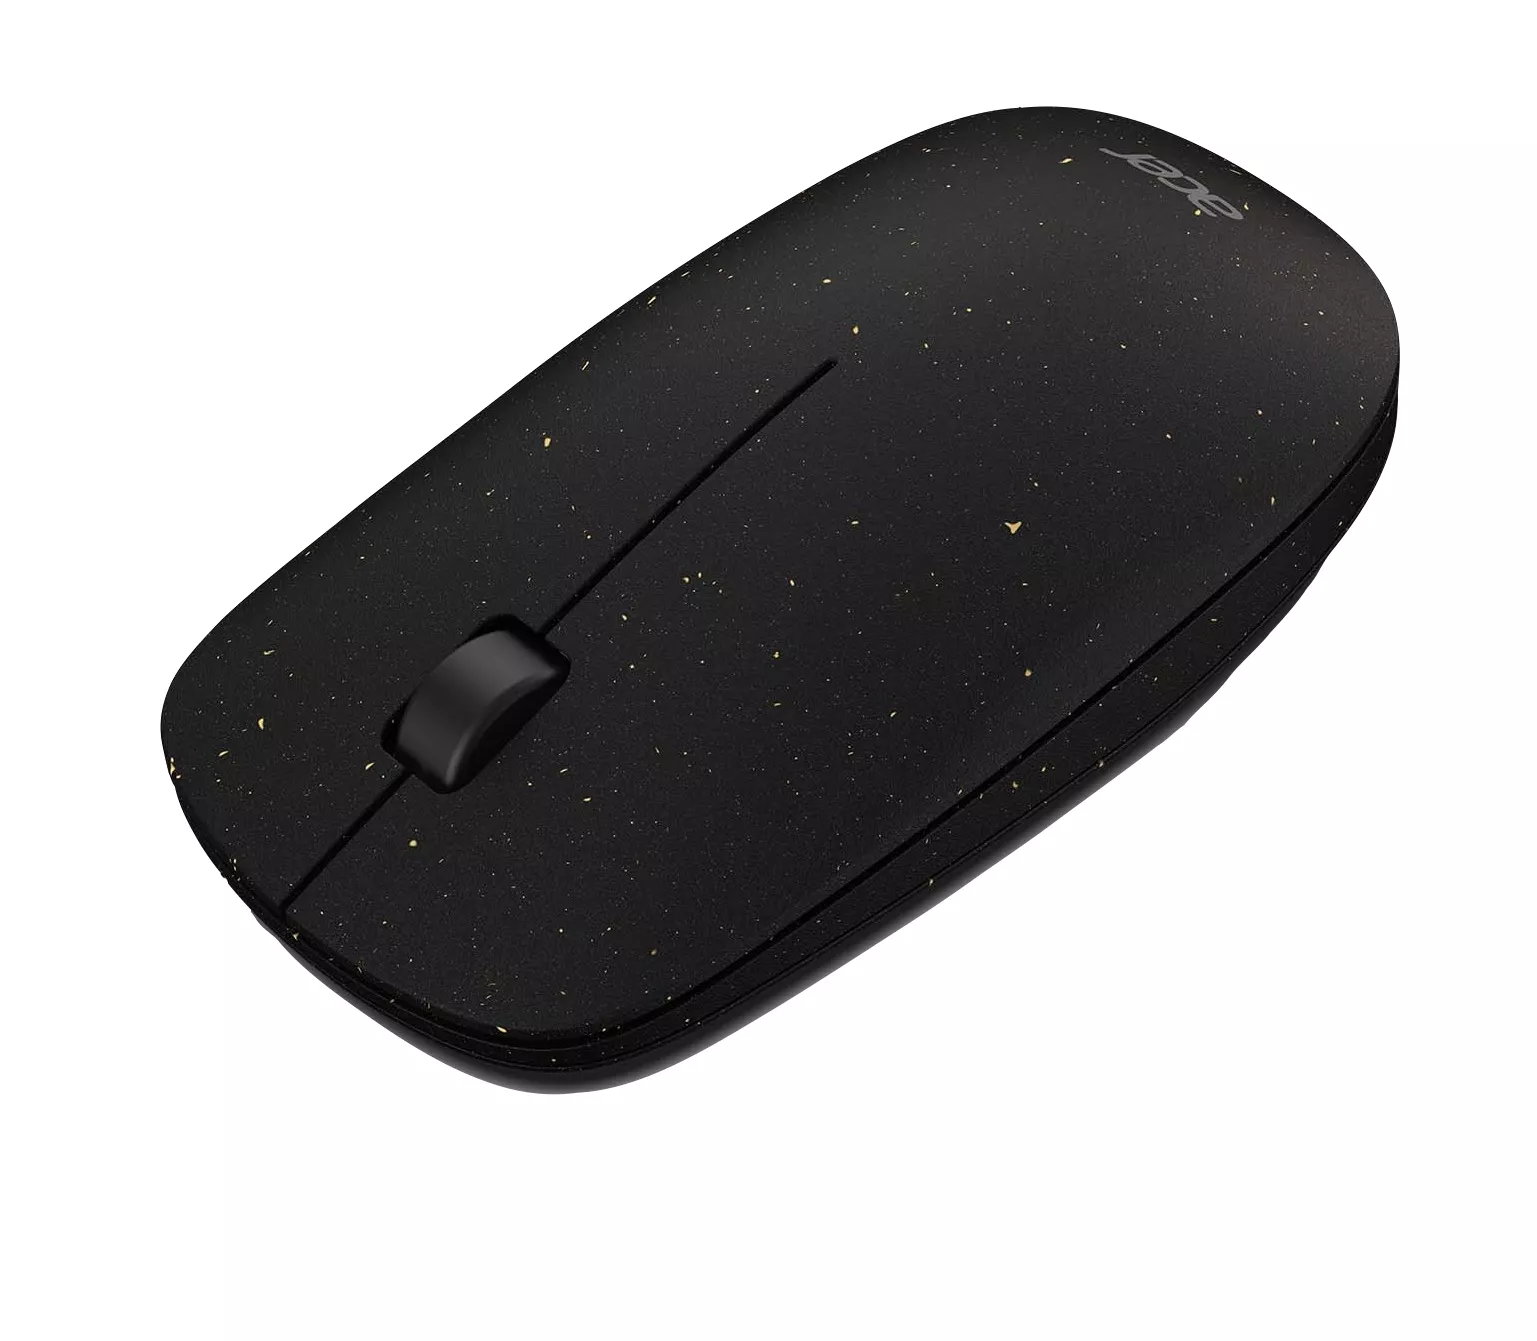 Achat ACER VERO 2.4G wireless optical mouse black au meilleur prix